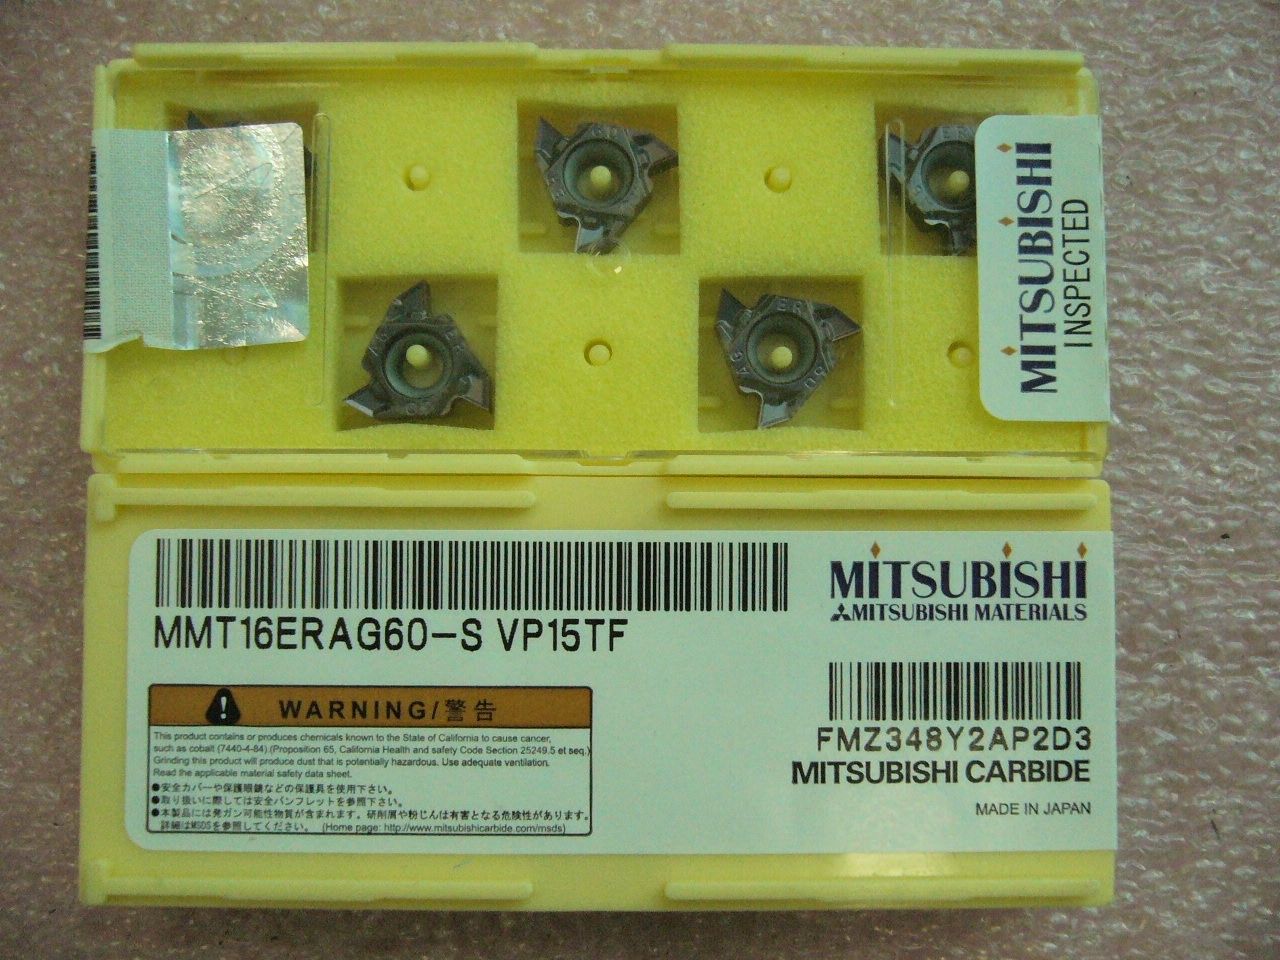 QTY 5x Mitsubishi MMT16ERAG60-S VP15TF 16ER AG60 Threading Inserts NEW